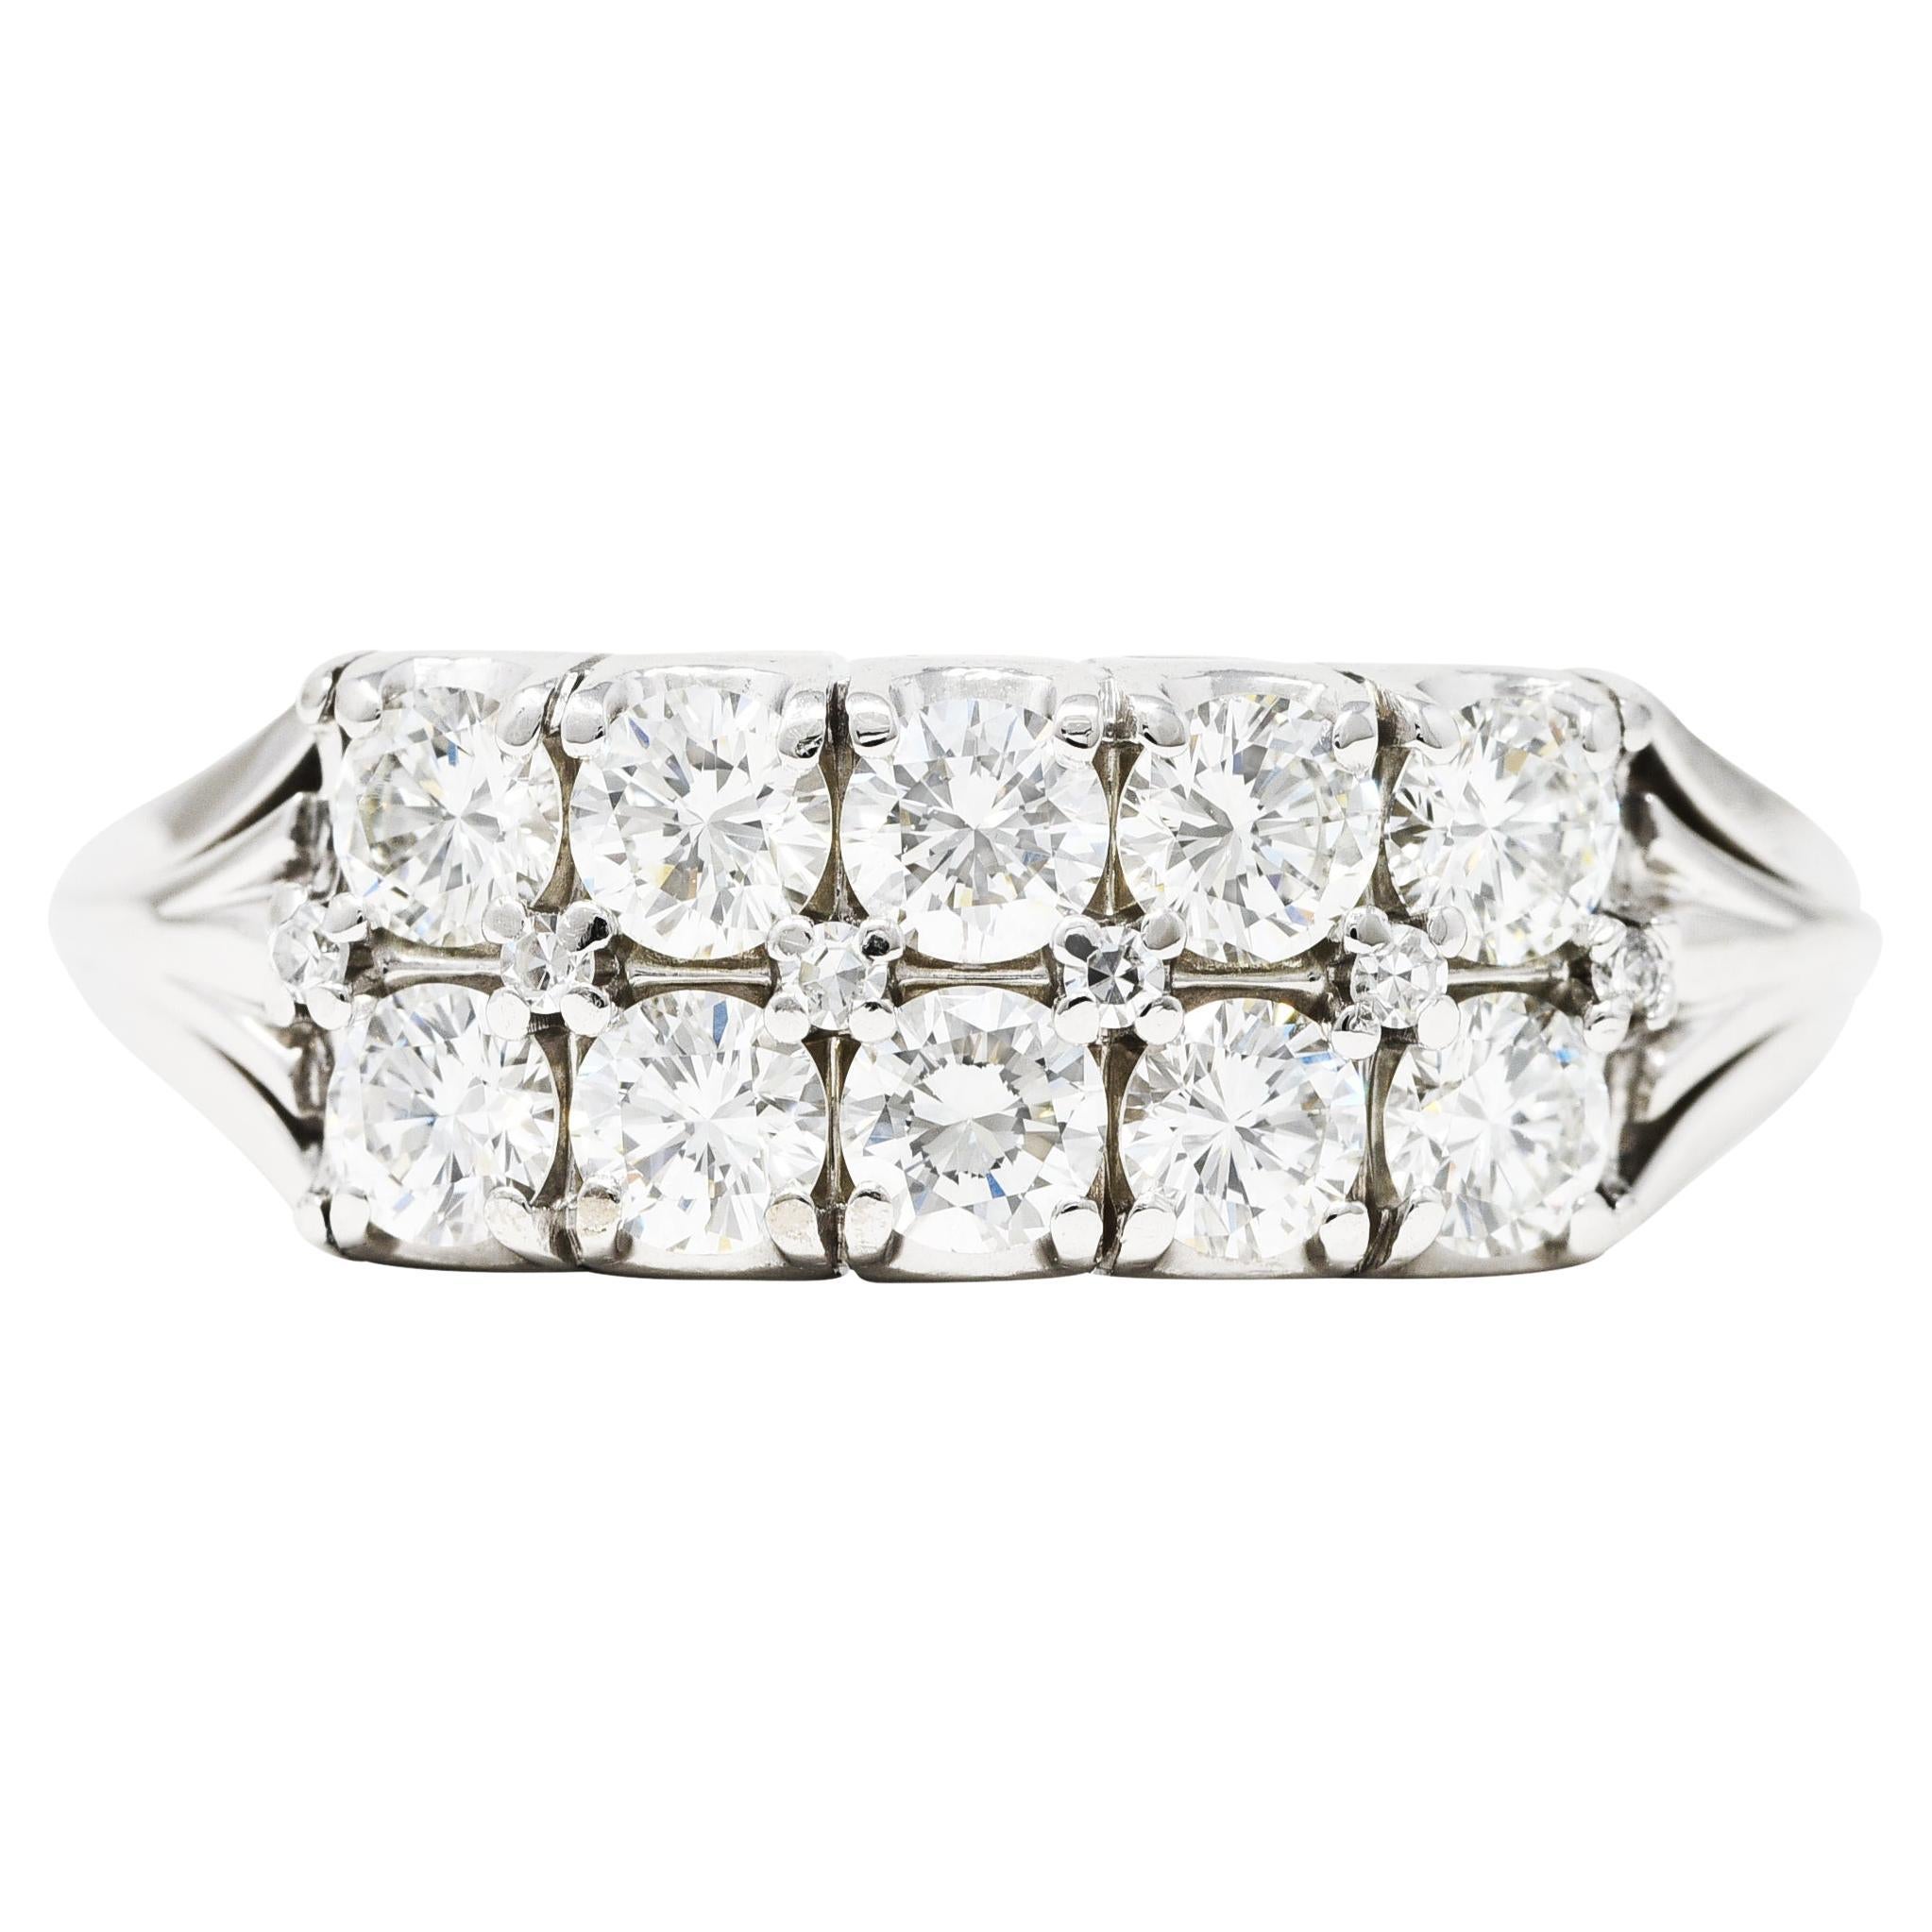 Das Ringband besteht aus zwei Reihen runder Diamanten im Brillantschliff. Mit einem Gesamtgewicht von ca.. 1.00 Karat - G/H Farbe mit insgesamt VS Klarheit. Der Korb ist von Osten nach Westen ausgerichtet und wird durch stilisierte, durchbrochene